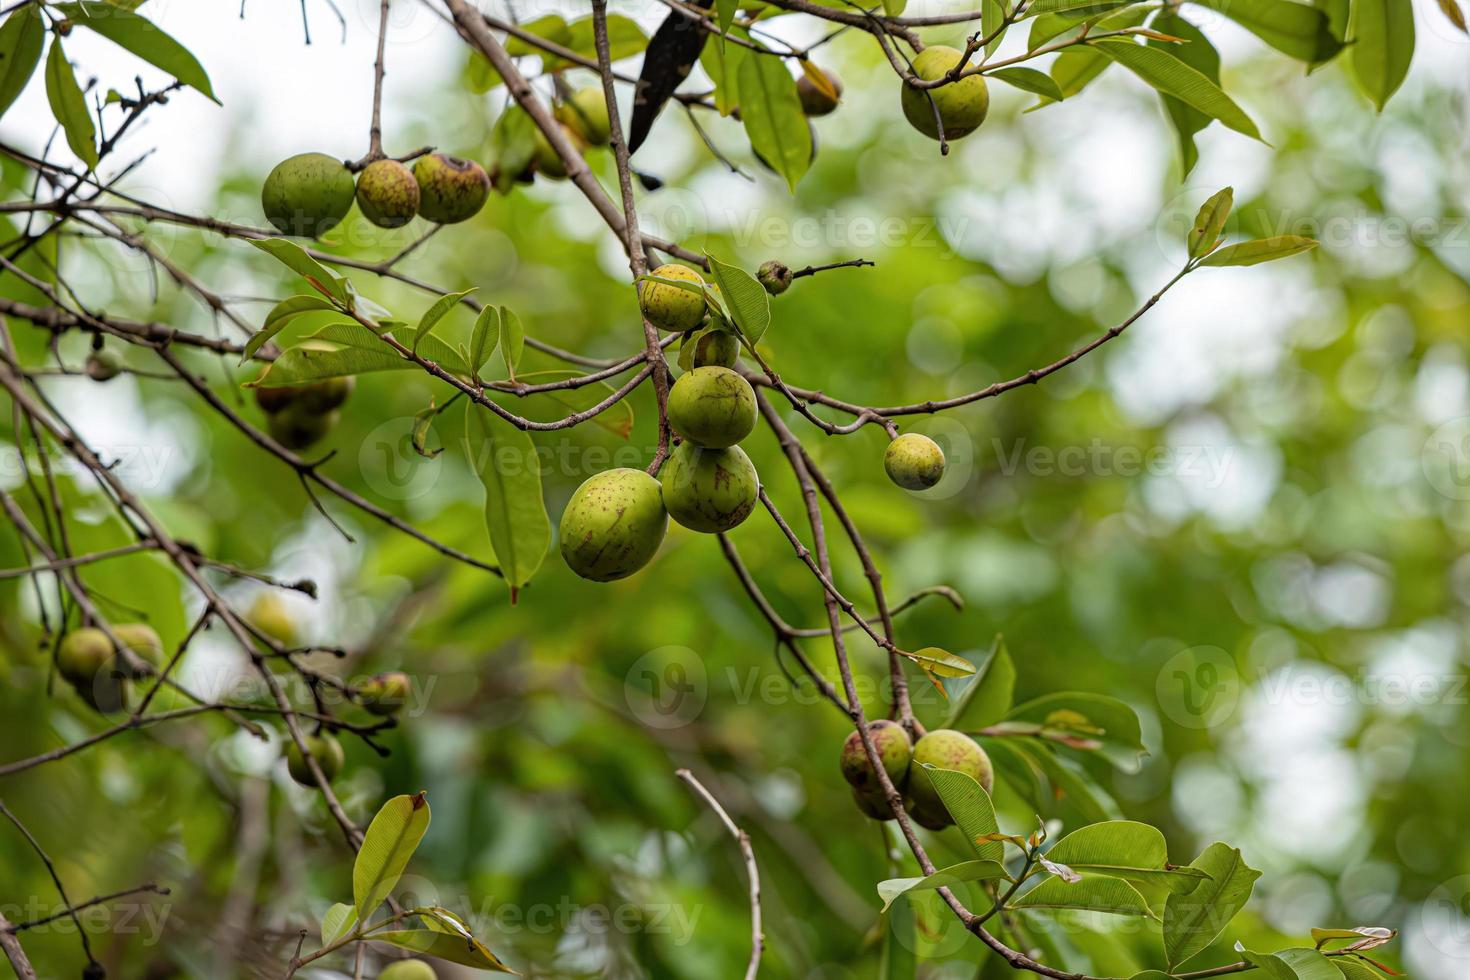 träd med frukt kallad mangaba foto